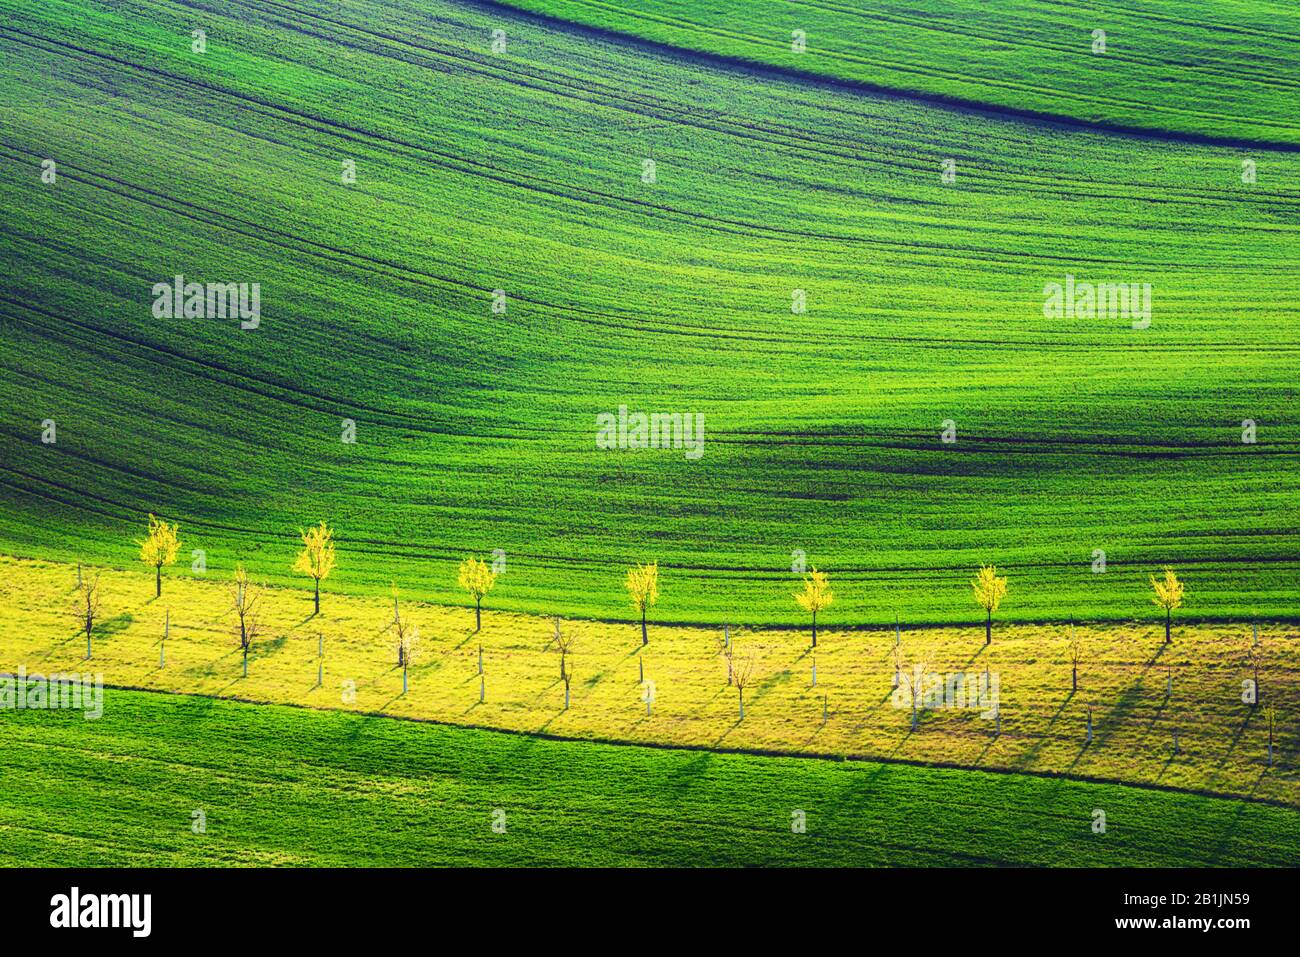 Paesaggio rurale di primavera con colline a strisce colorate e giardino di alberi. Onde verdi e marroni dei campi agricoli della Moravia meridionale, Repubblica Ceca Foto Stock